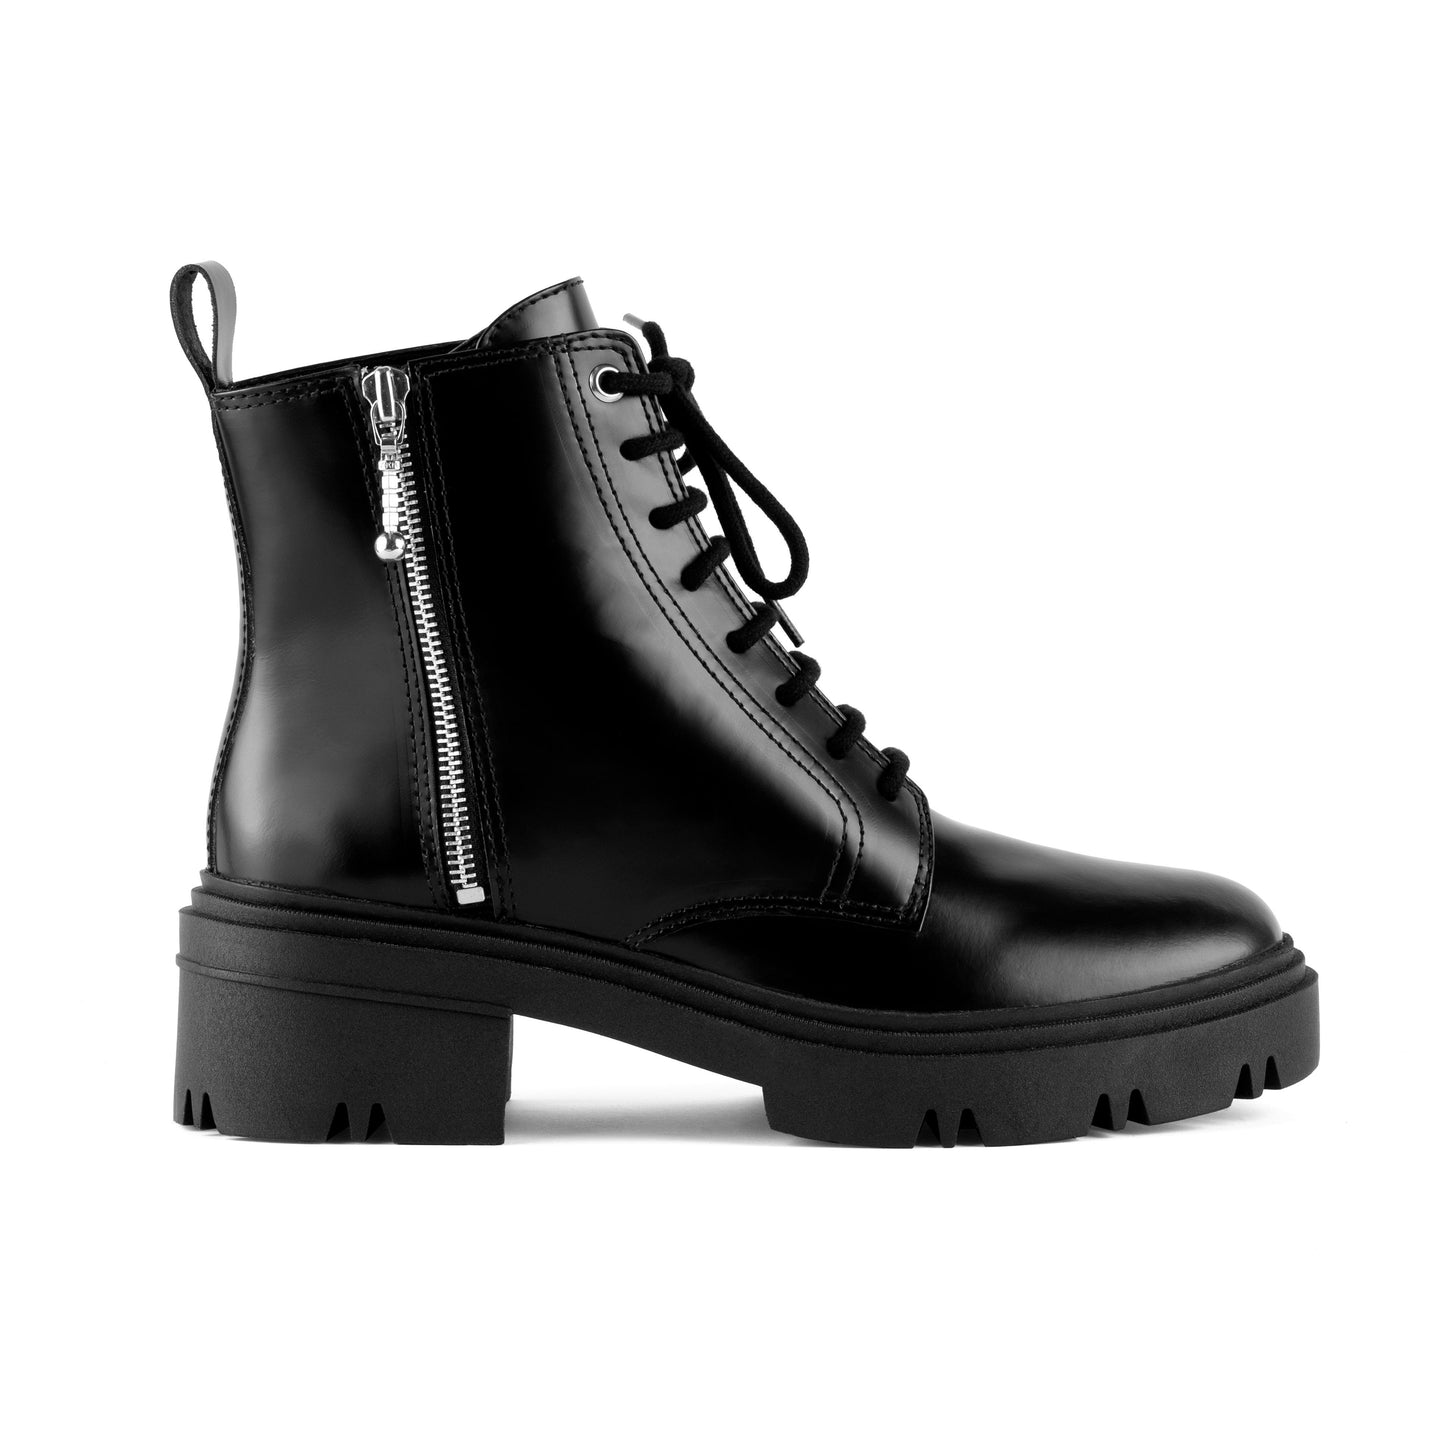 Oregon Black Combat Boots